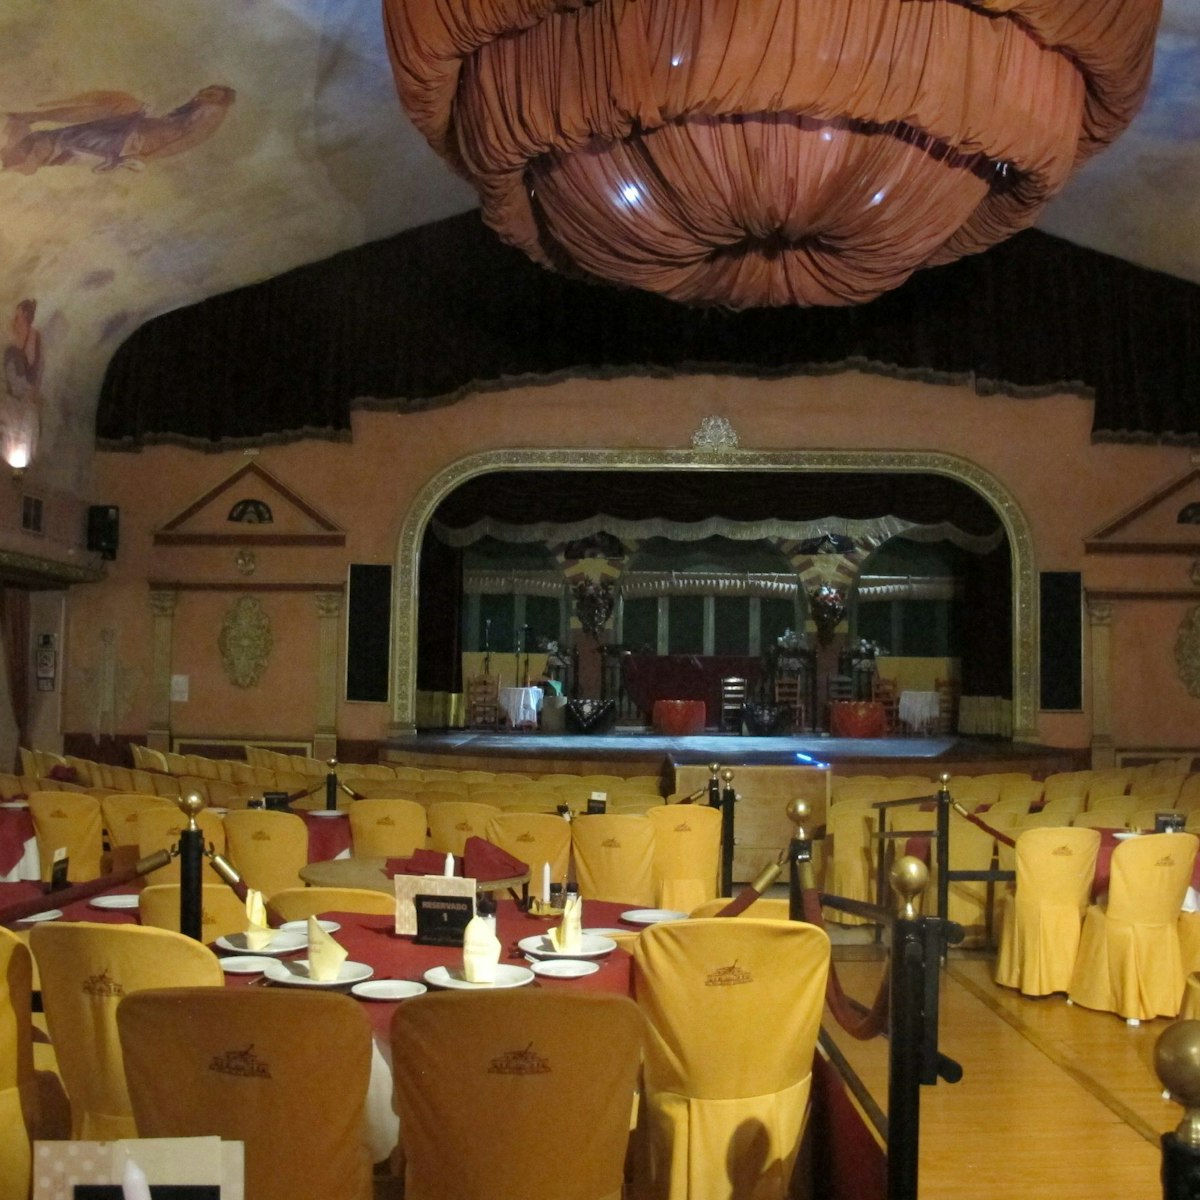 El Palacio Andaluz flamenco venue seats and stage